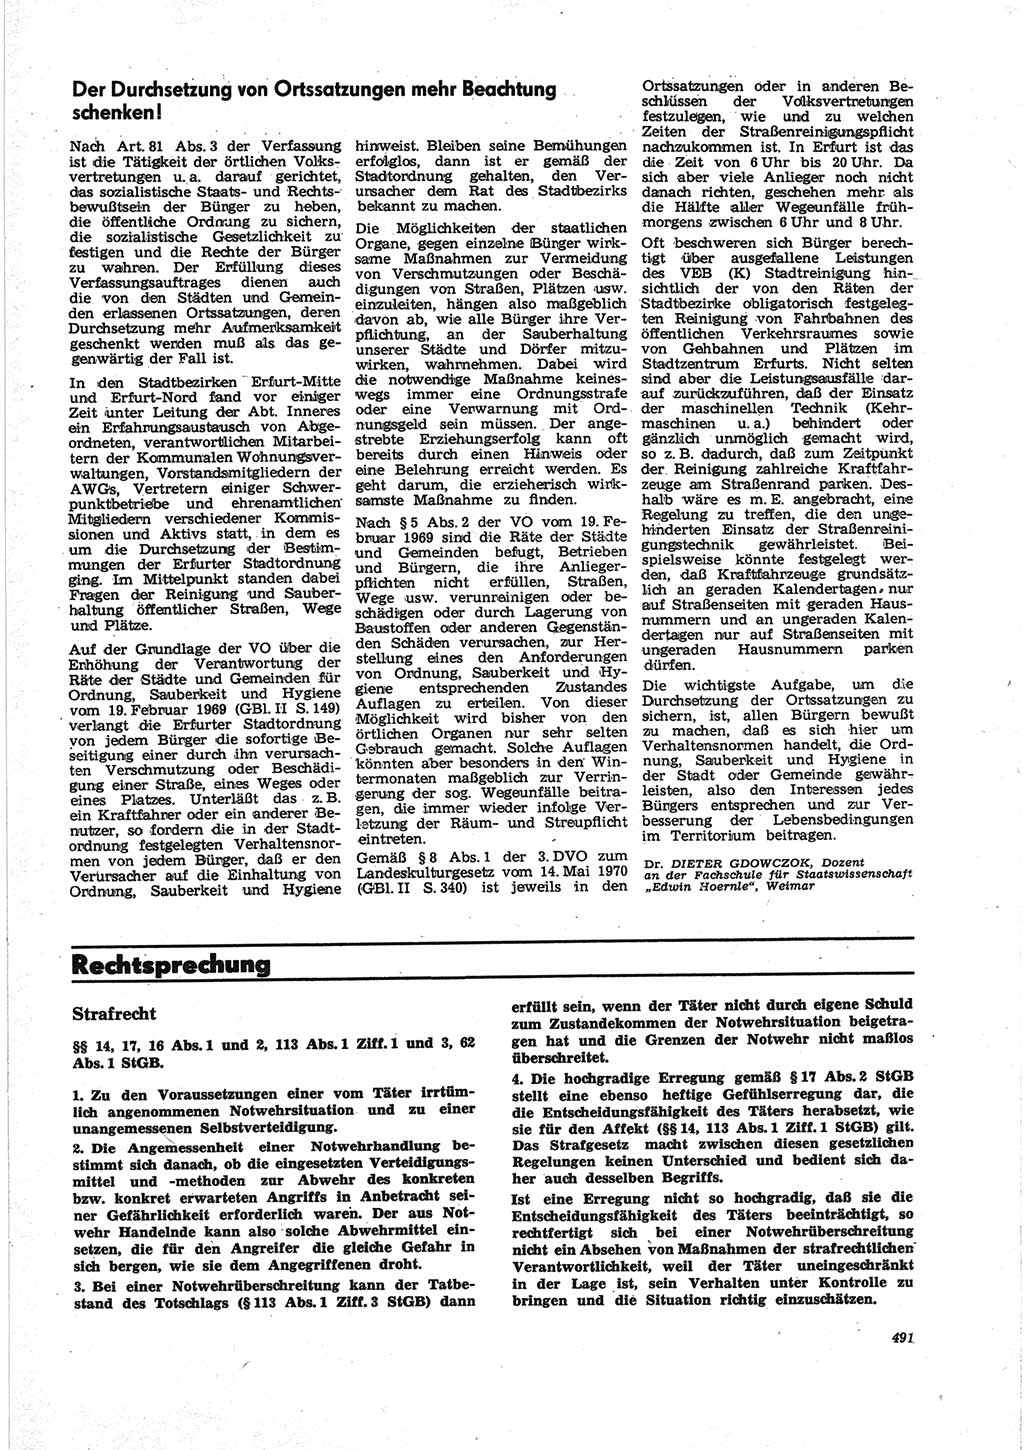 Neue Justiz (NJ), Zeitschrift für Recht und Rechtswissenschaft [Deutsche Demokratische Republik (DDR)], 25. Jahrgang 1971, Seite 491 (NJ DDR 1971, S. 491)